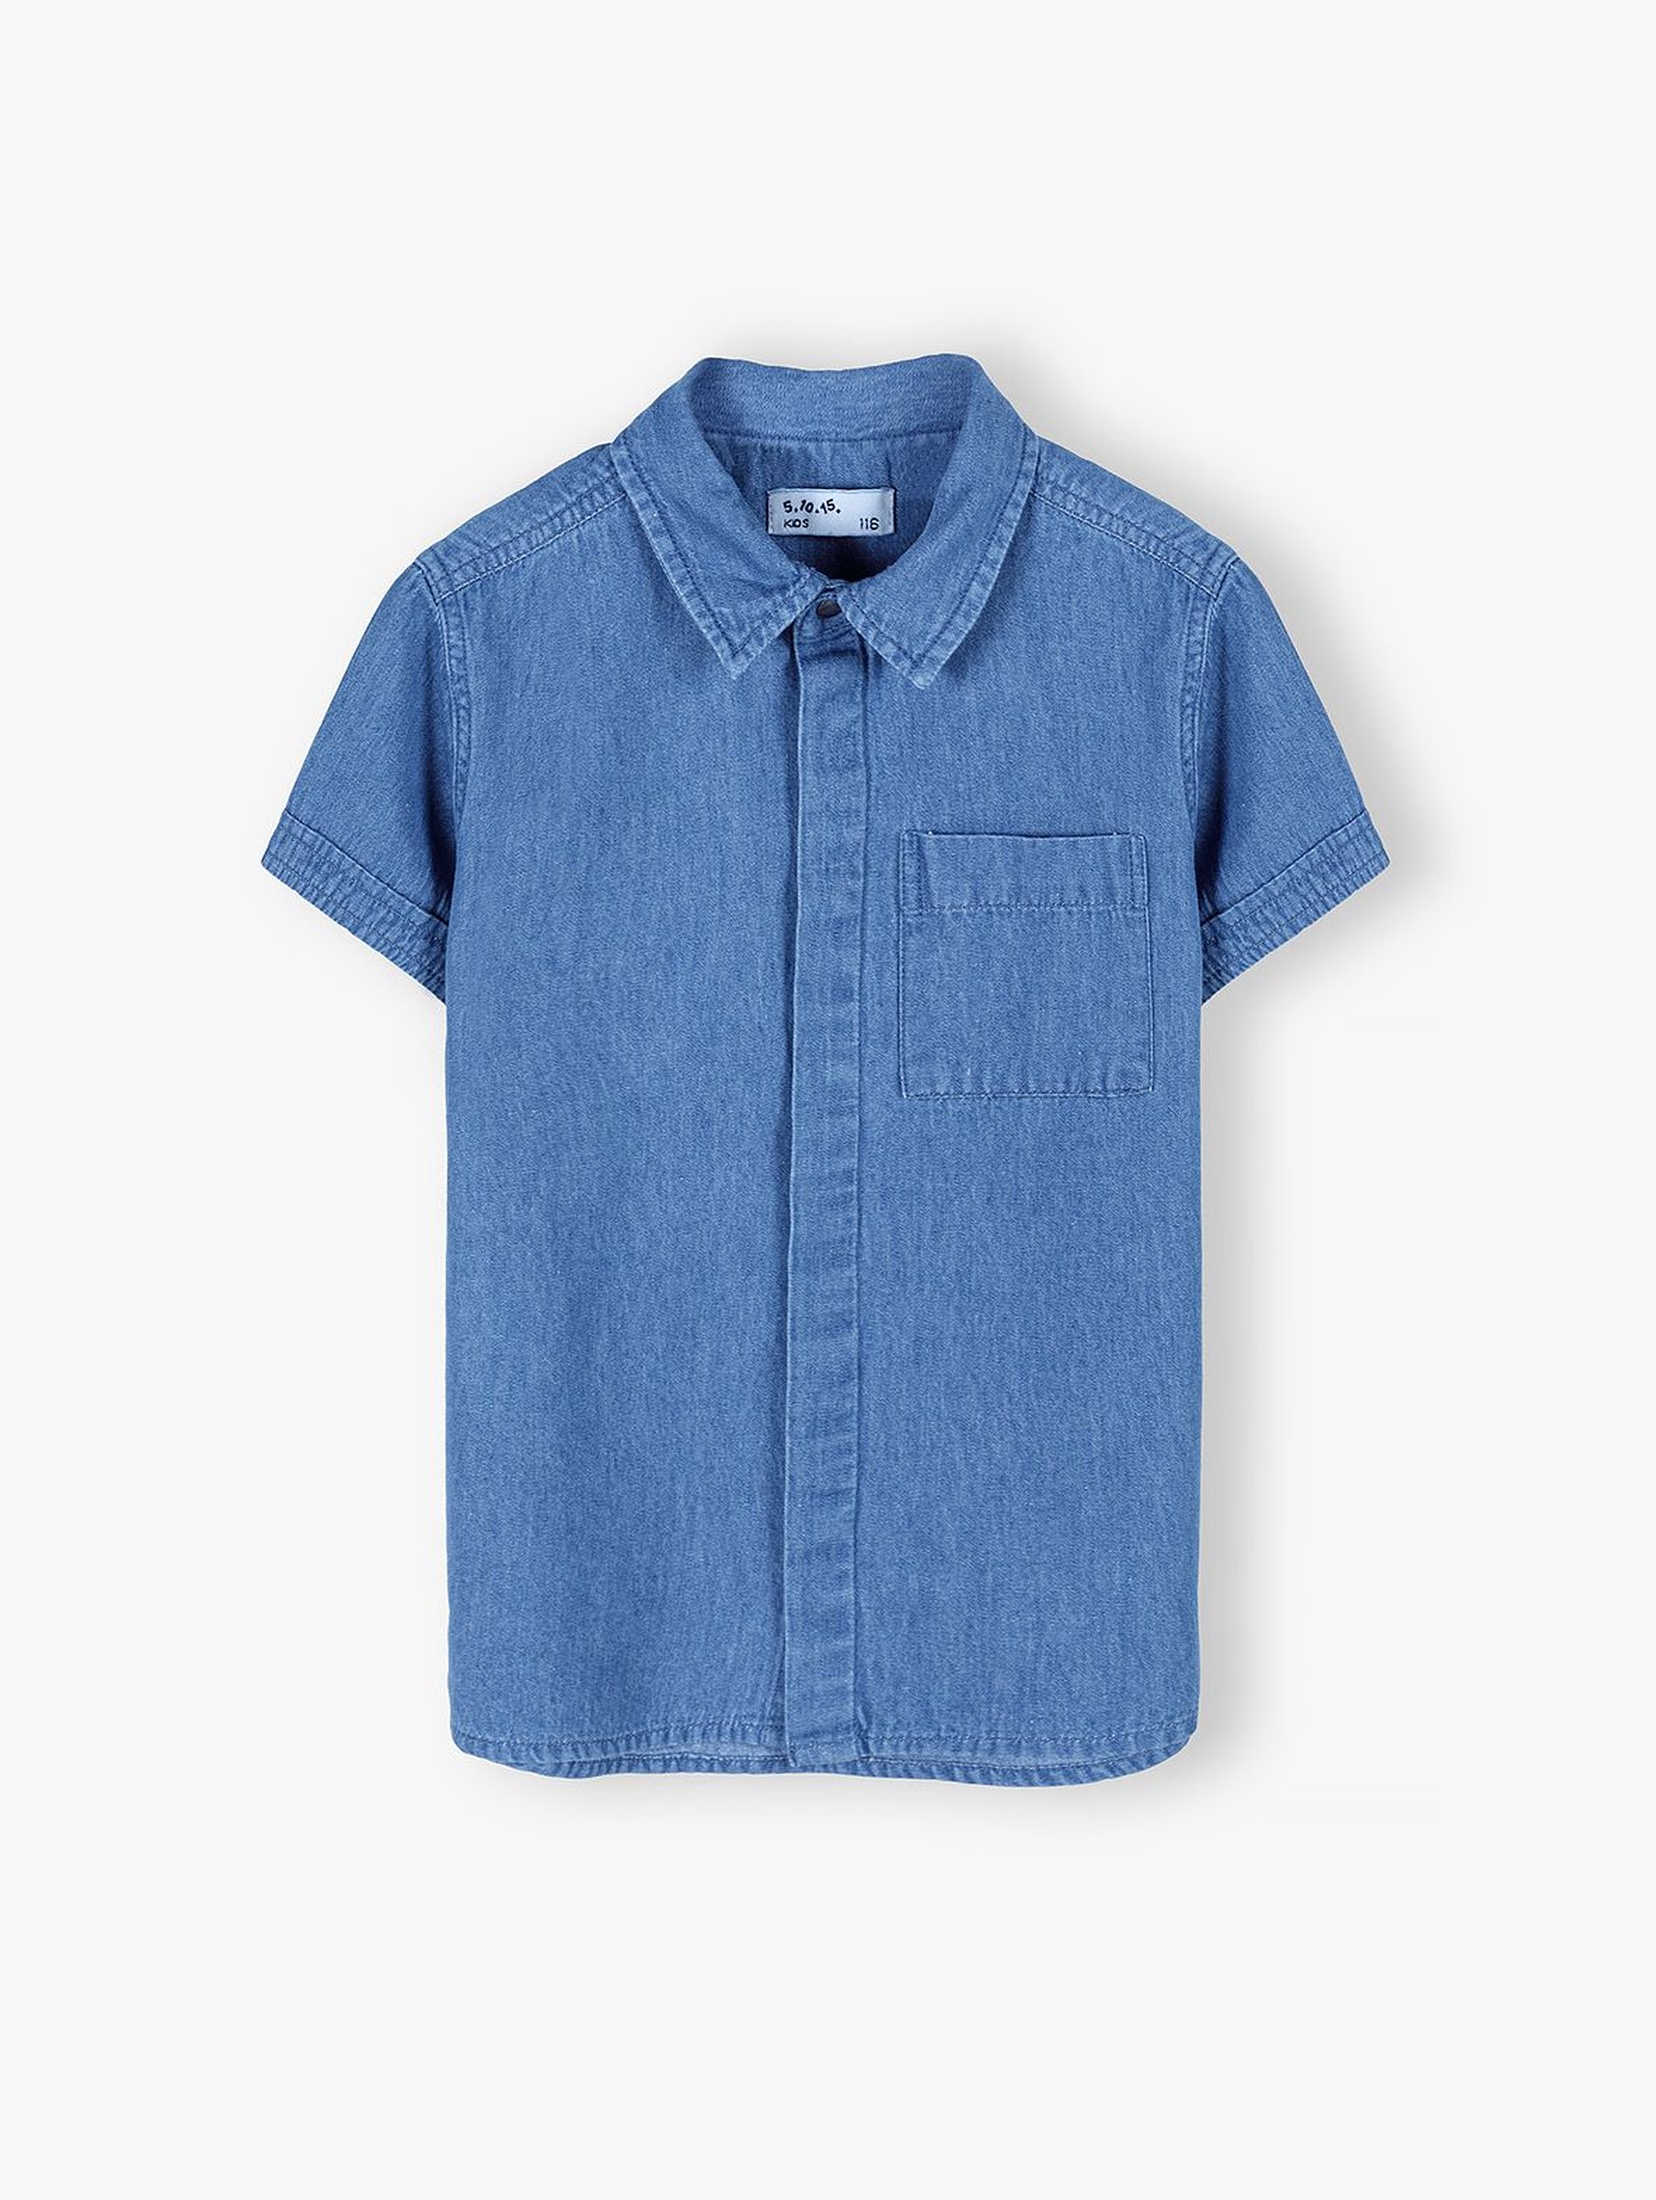 Bawełniana koszula chłopięca z krótkim rękawem - niebieska